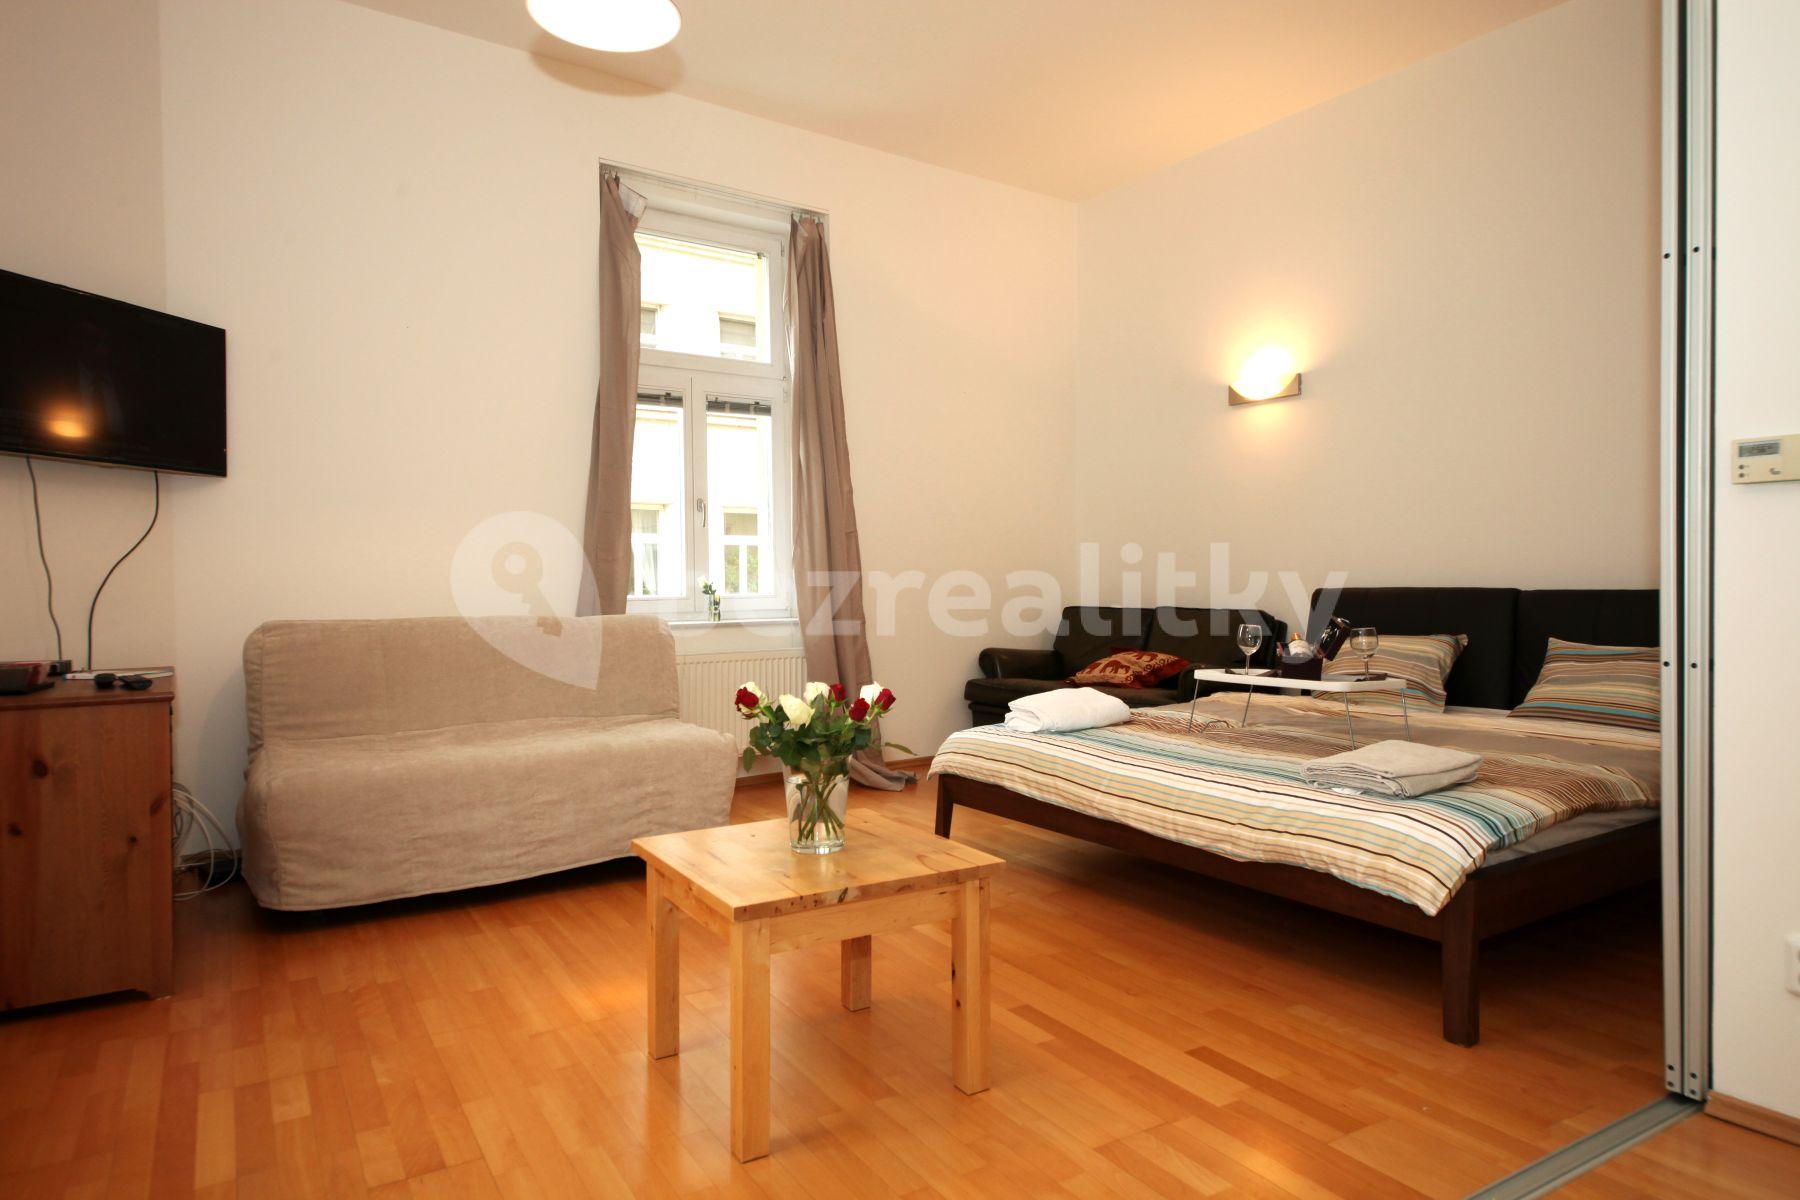 1 bedroom flat for sale, 40 m², Umělecká, Prague, Prague